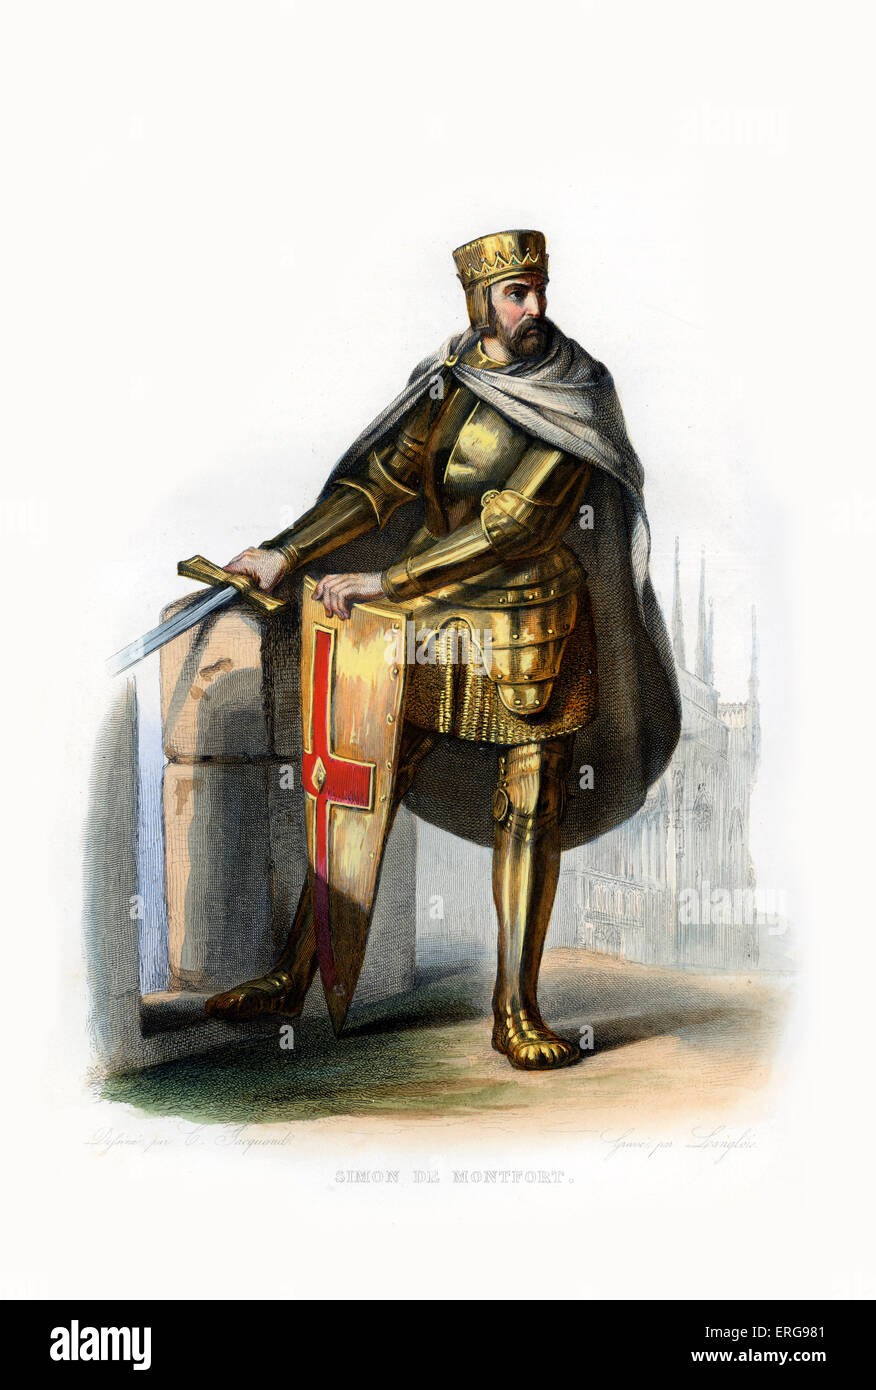 Simon IV de Montfort. Noble français, ont pris part à la quatrième croisade (1202-1204) et a été un éminent chef de la Croisade des Albigeois. c. 1160-1218. ByLanglois gravure, c.1844. Banque D'Images